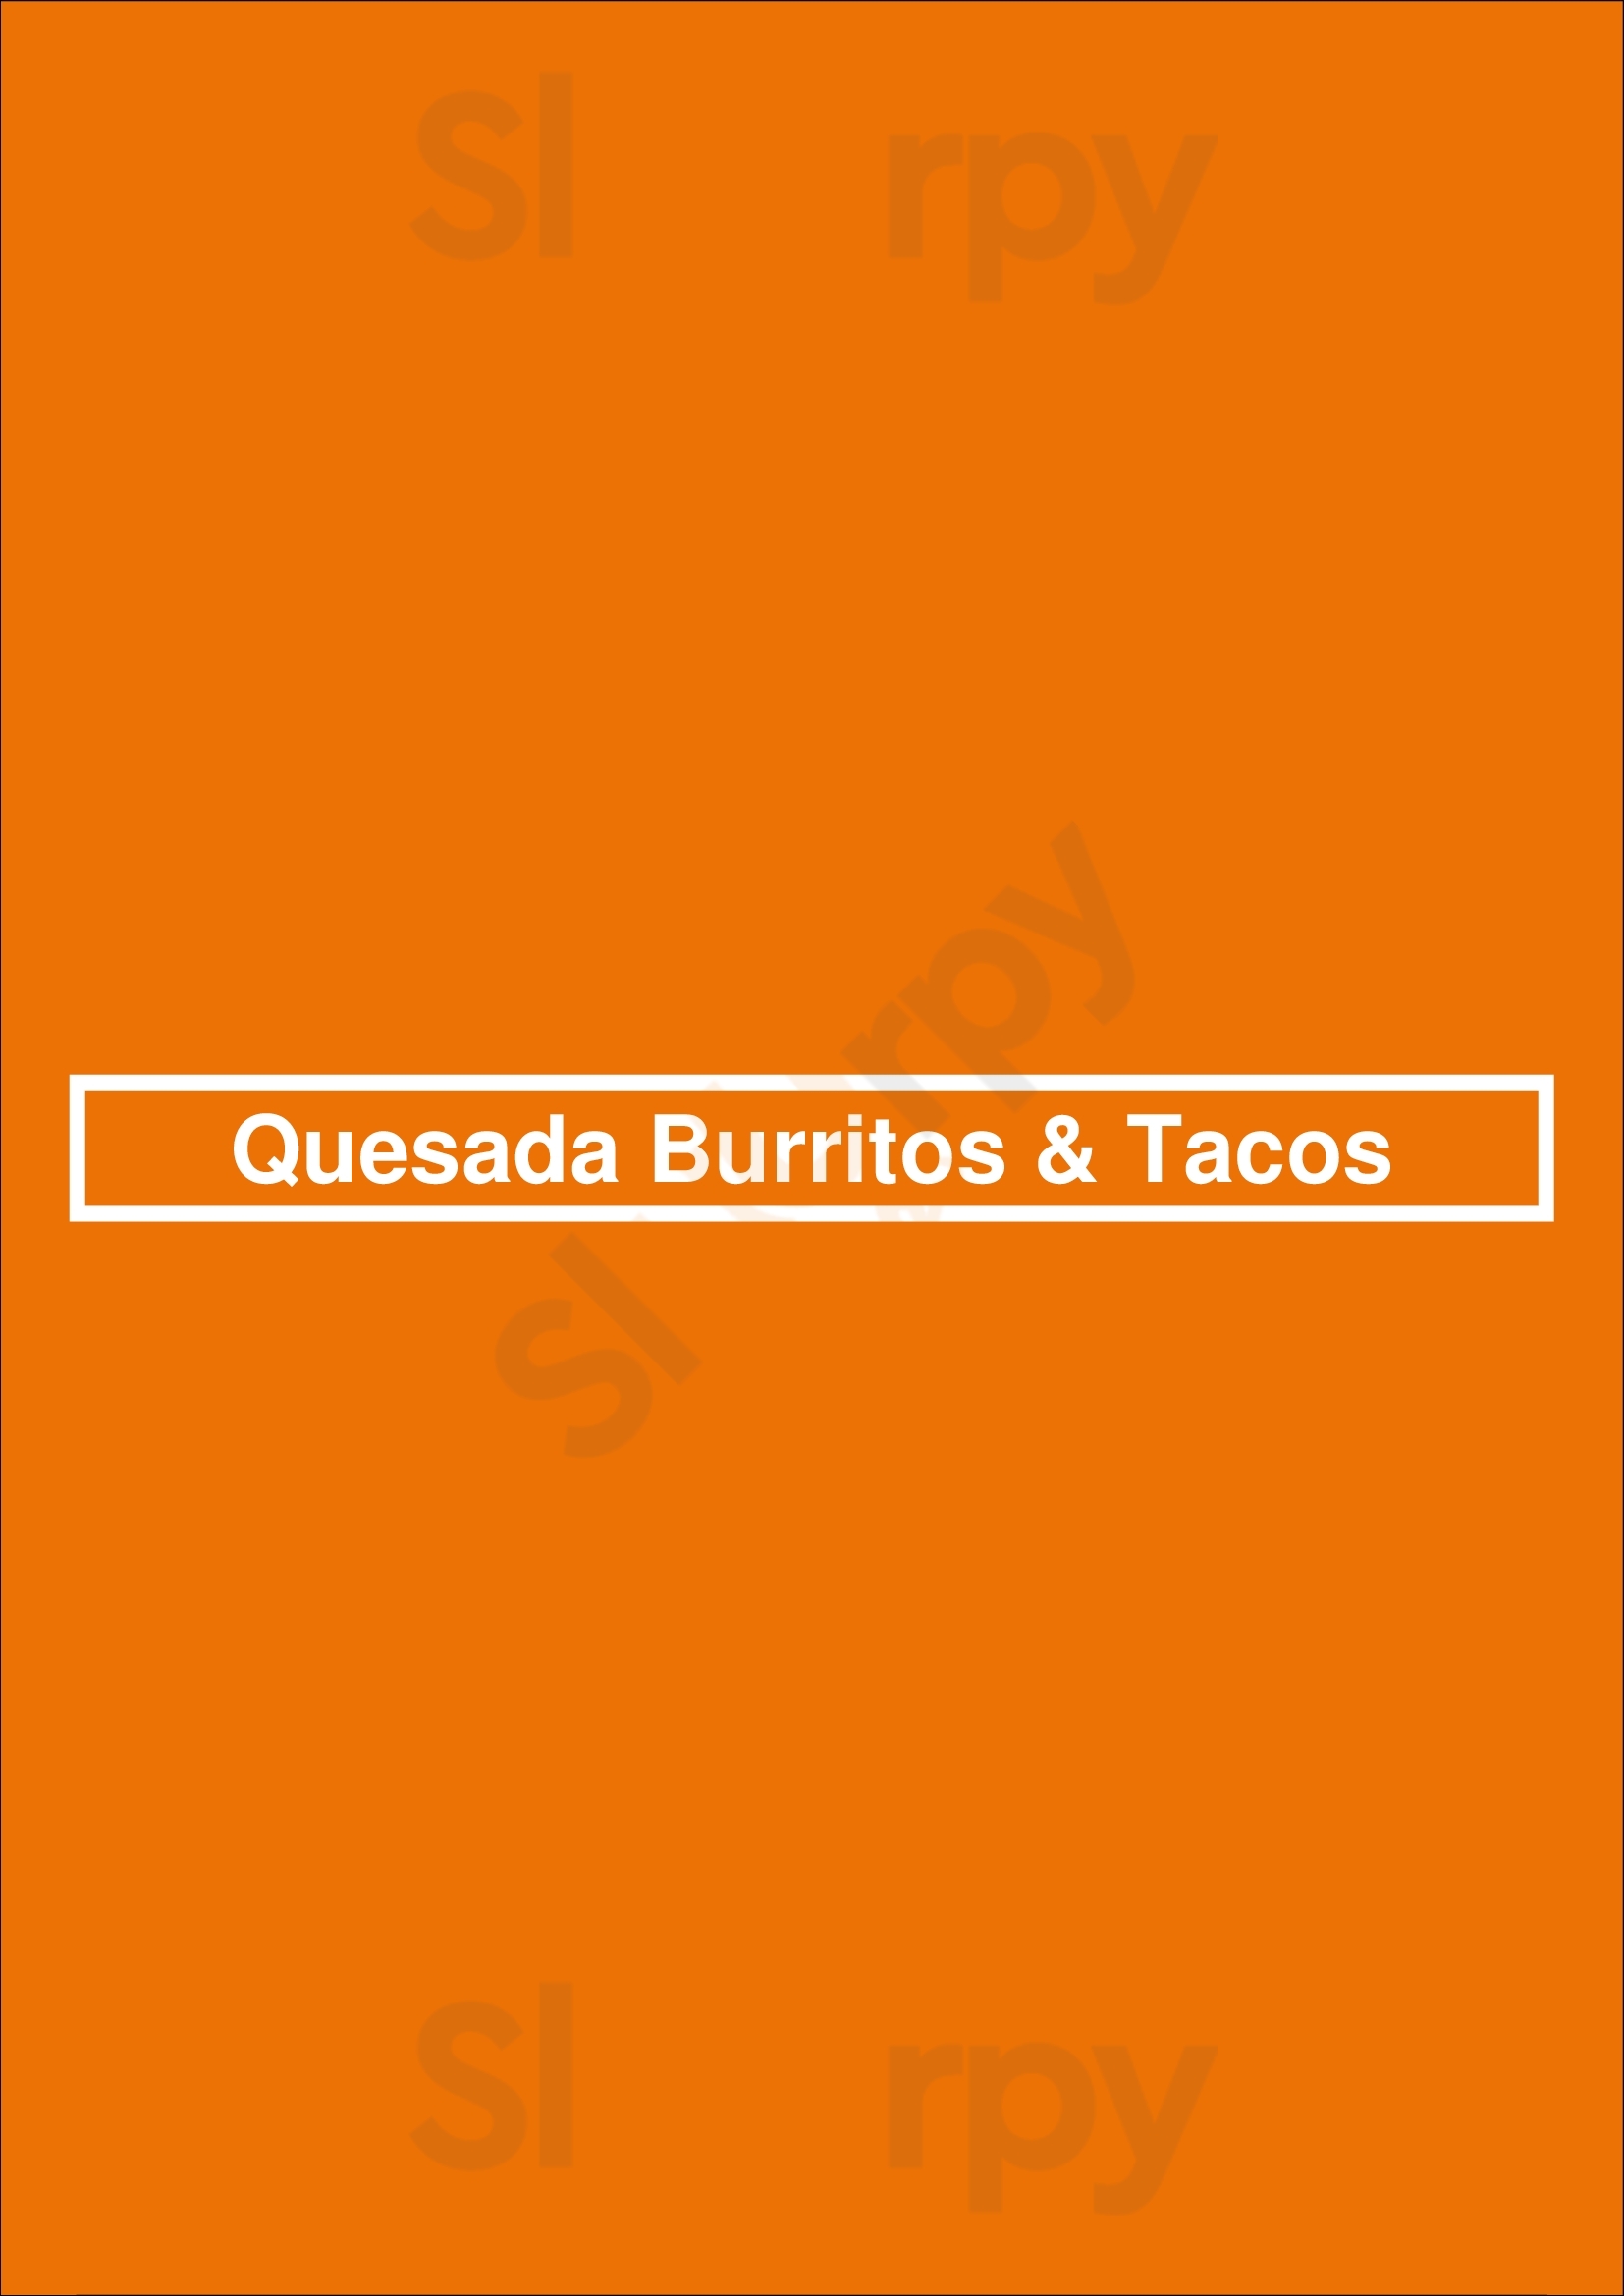 Quesada Burritos & Tacos Aurora Menu - 1